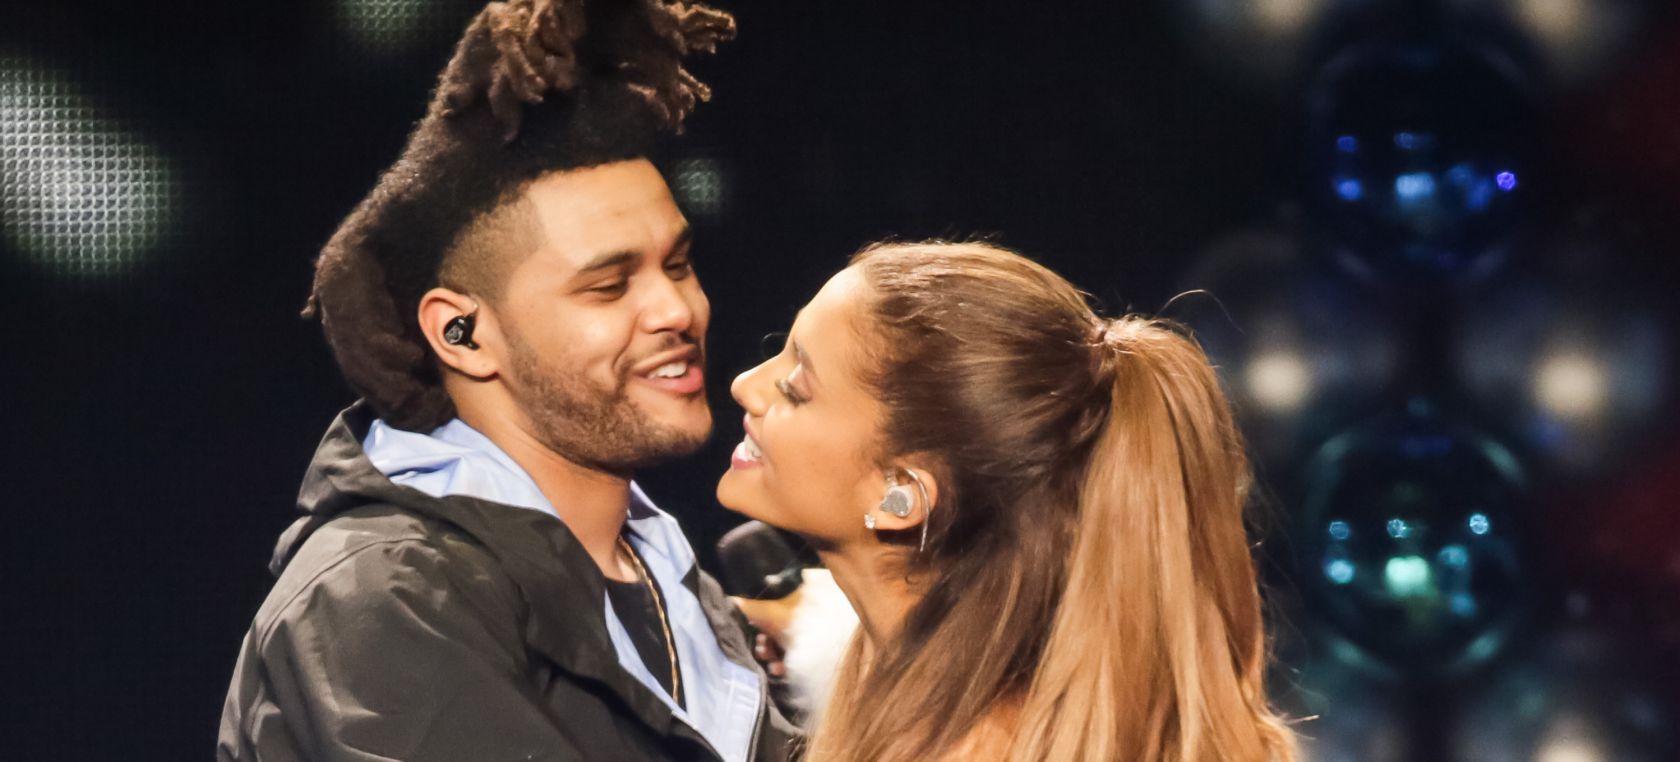 Levántate Accidental Desagradable The Weeknd y Ariana Grande actuarán juntos en los iHeart Radio Music Awards  | Música | LOS40